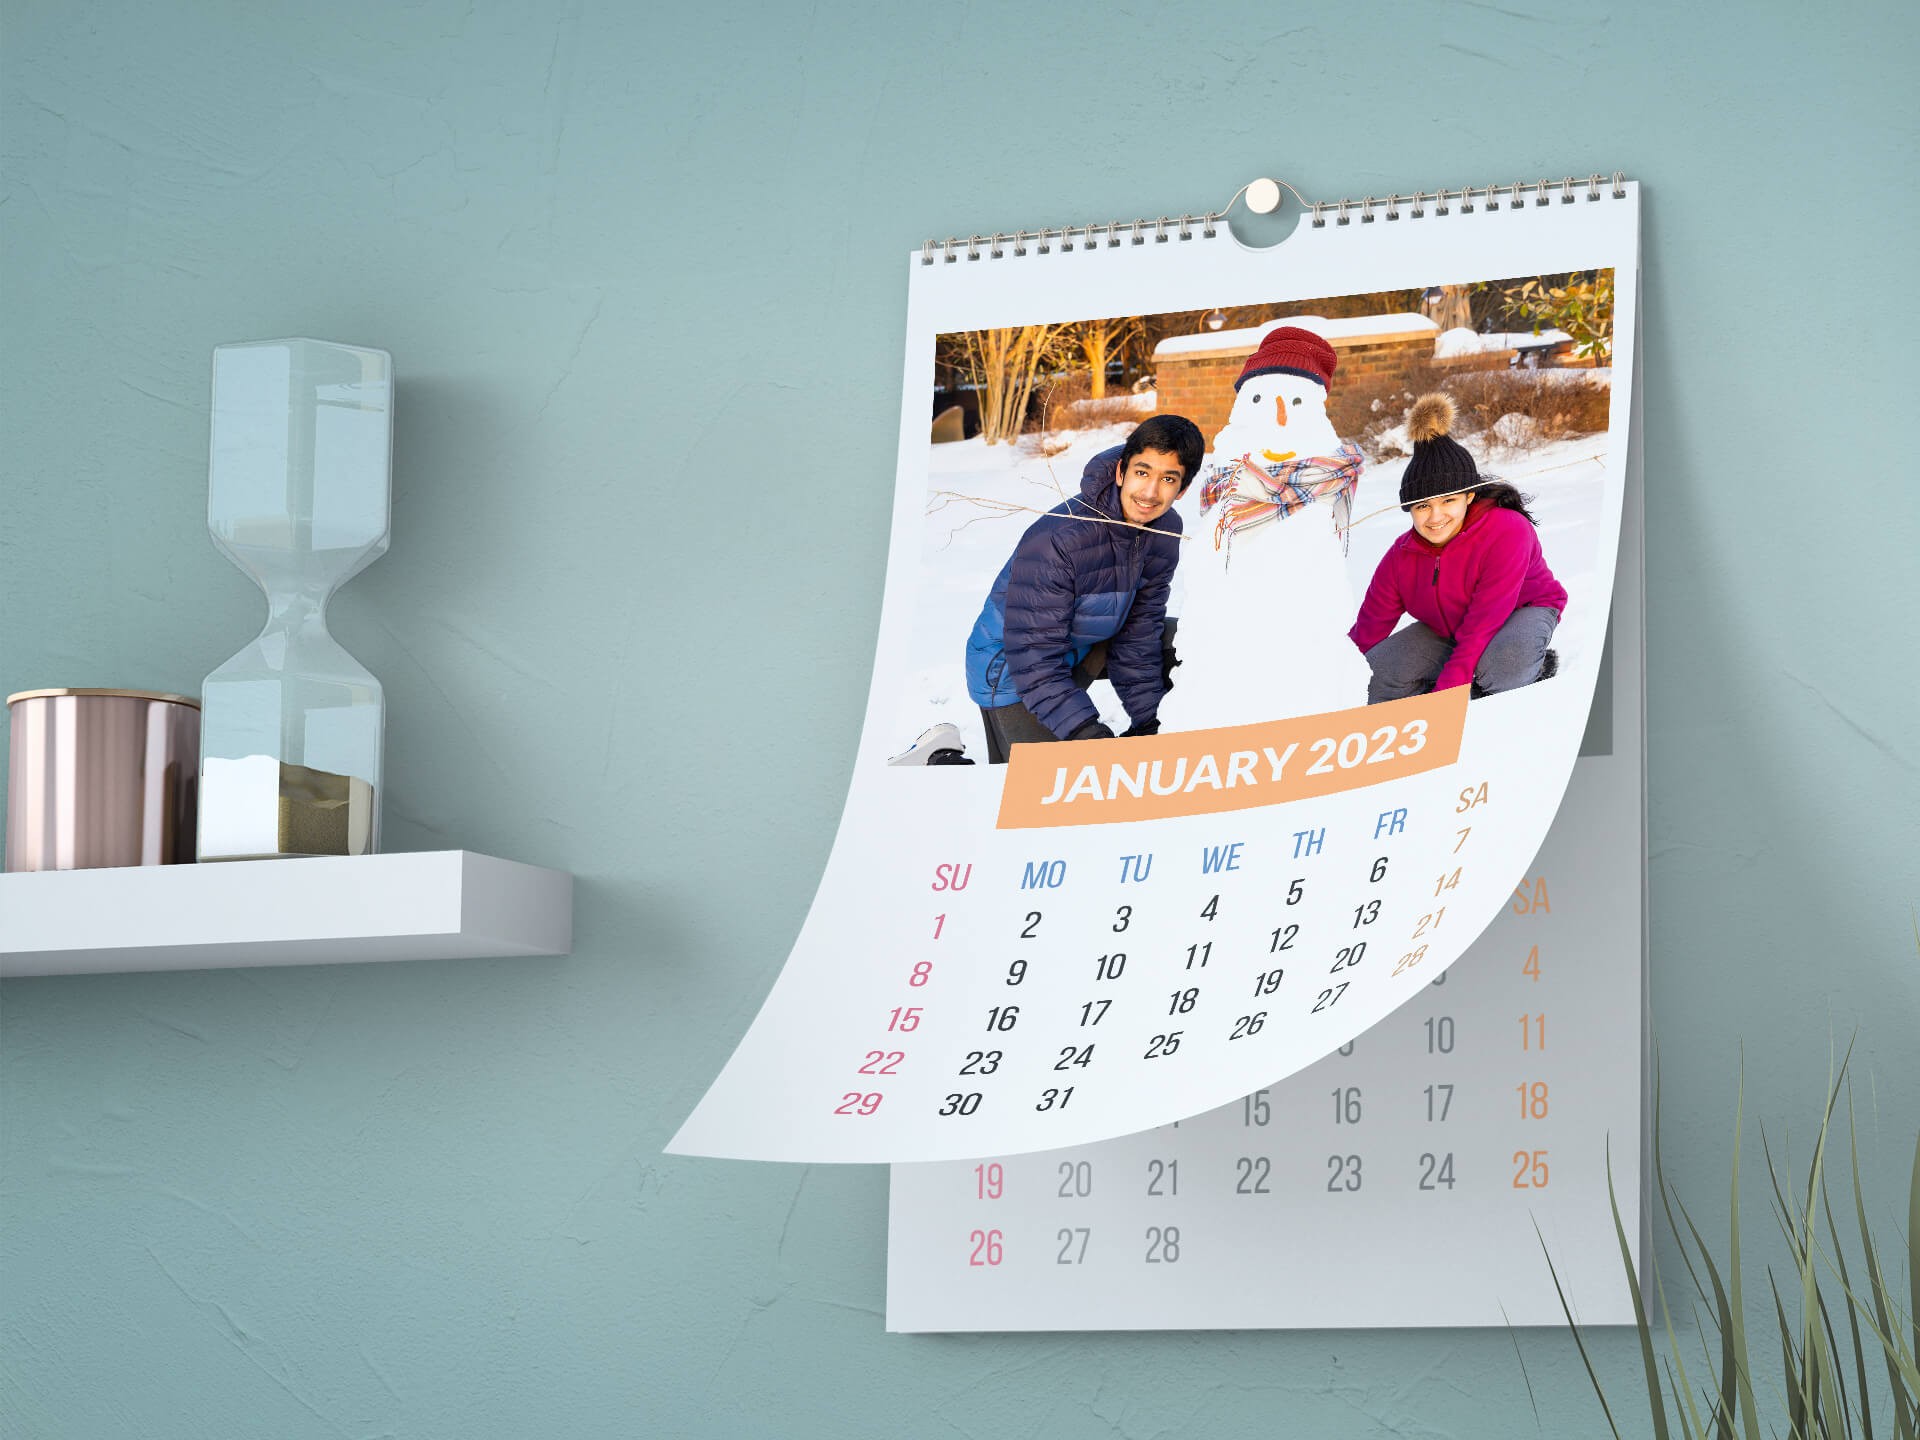 Printing of calendar: FinMin Order dated 13.12.2022